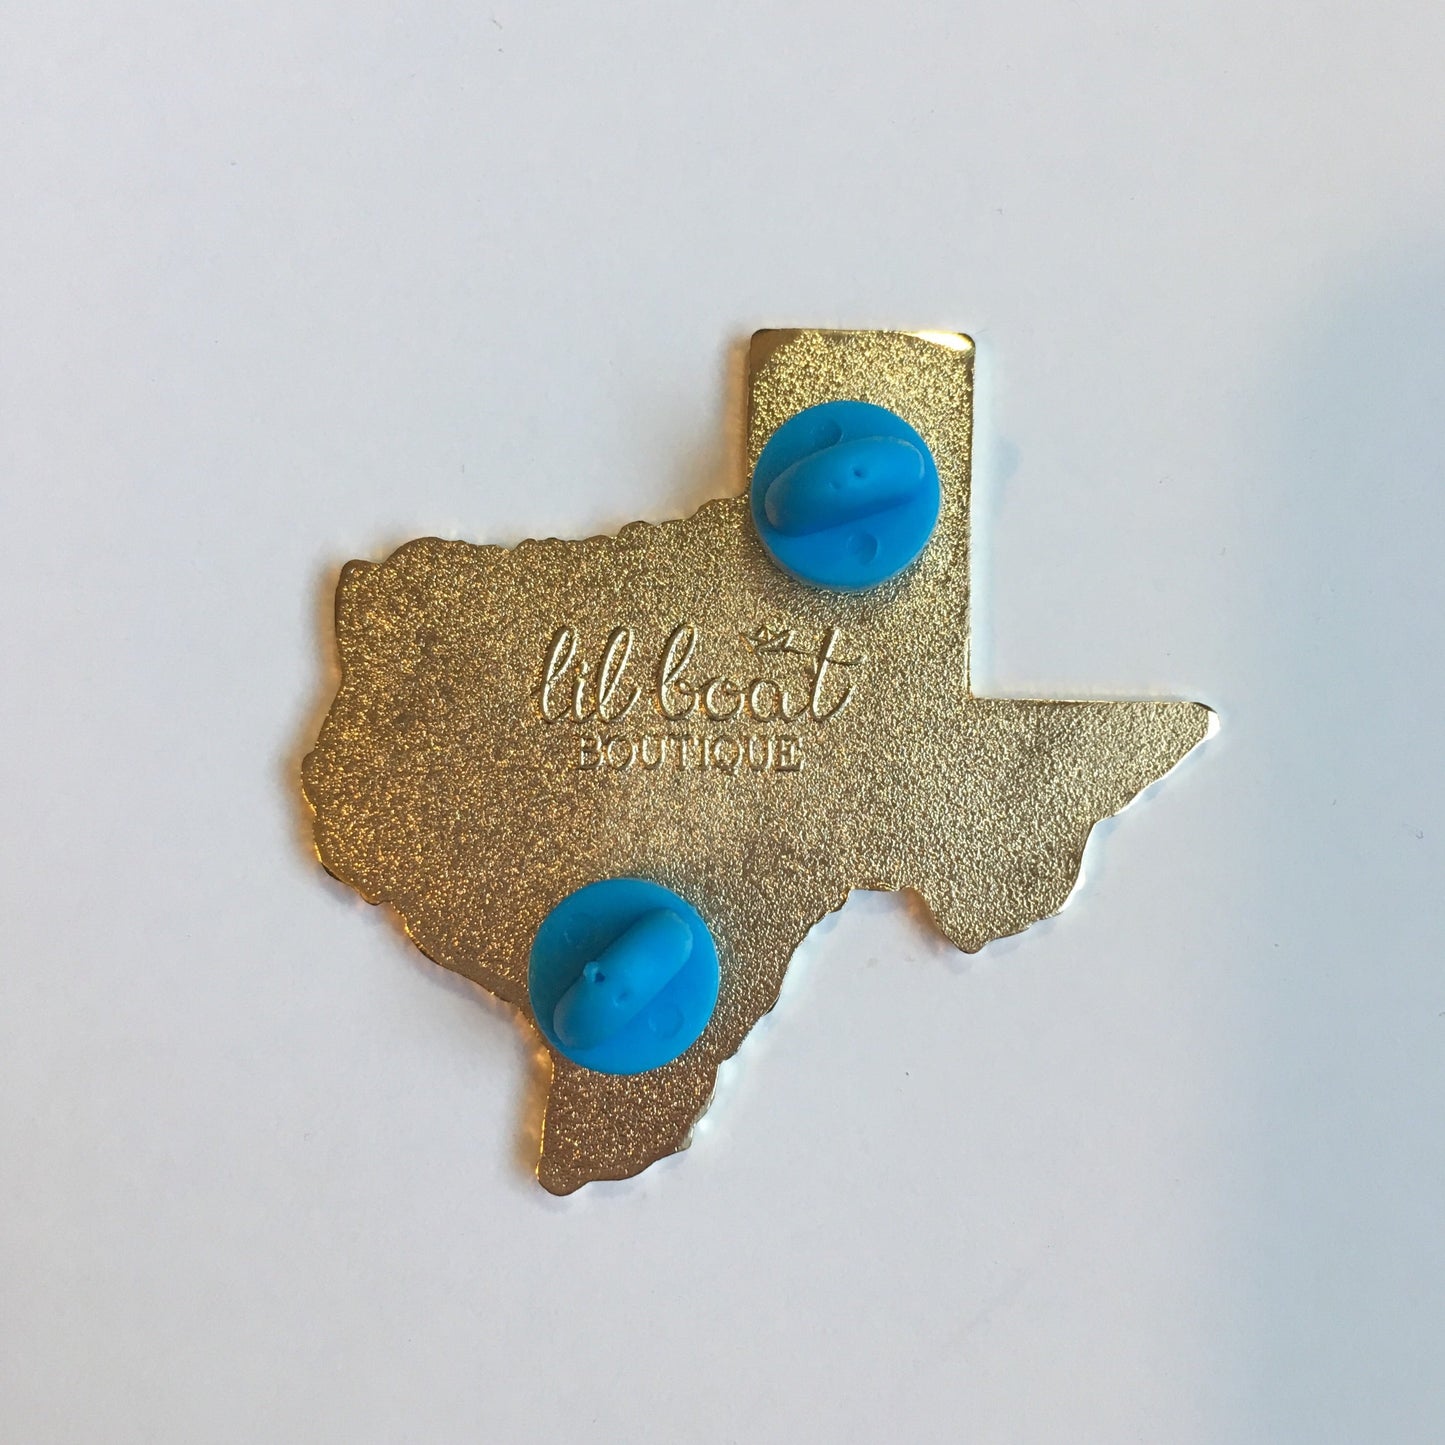 Texas Bluebonnet - State Flower Hard Enamel Pin